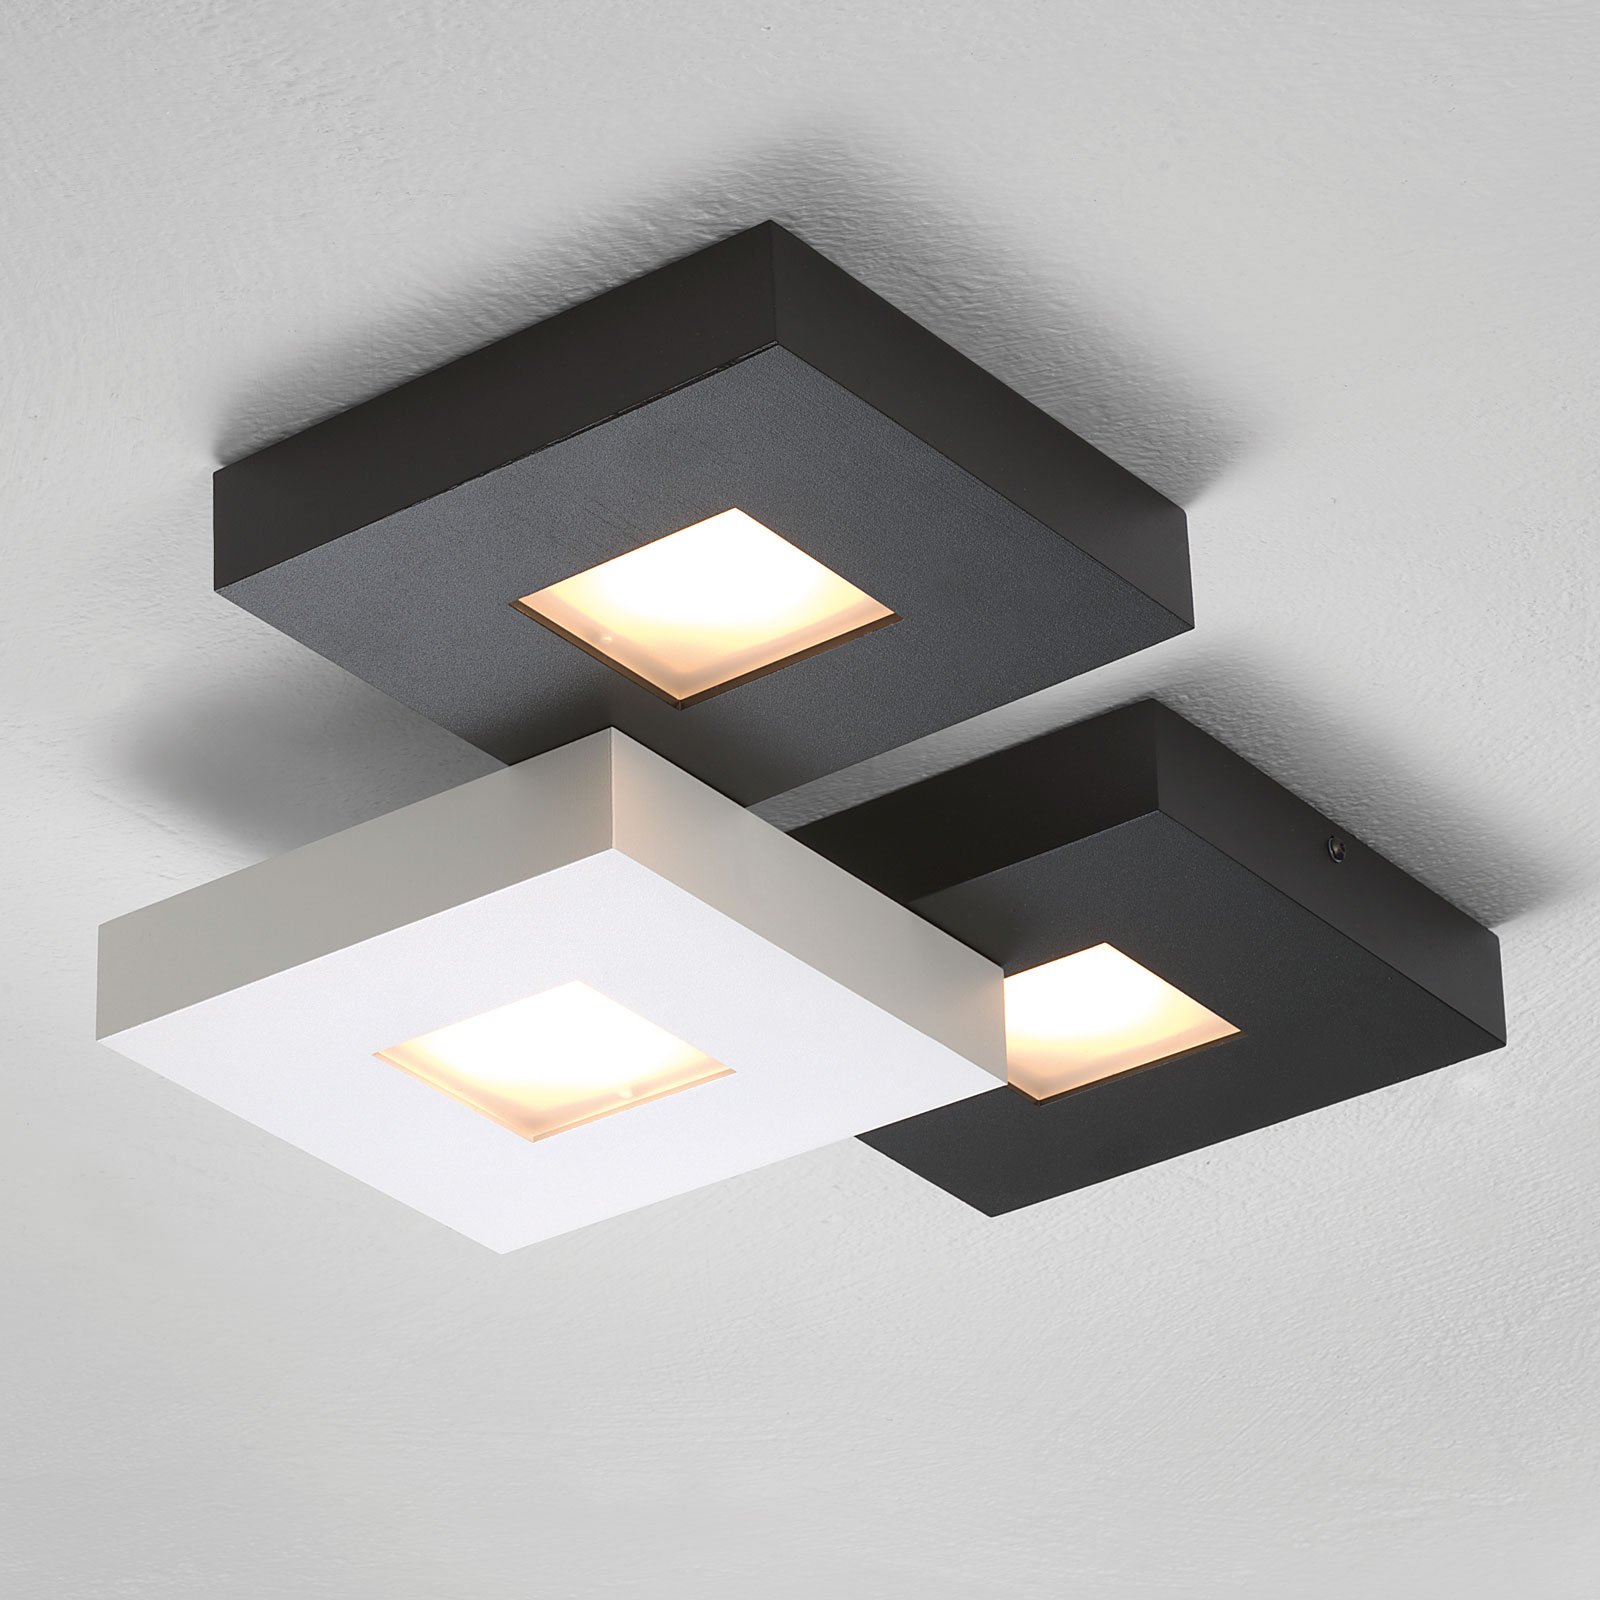 LED-taklampa Cubus med 3 ljuskällor, svartvit